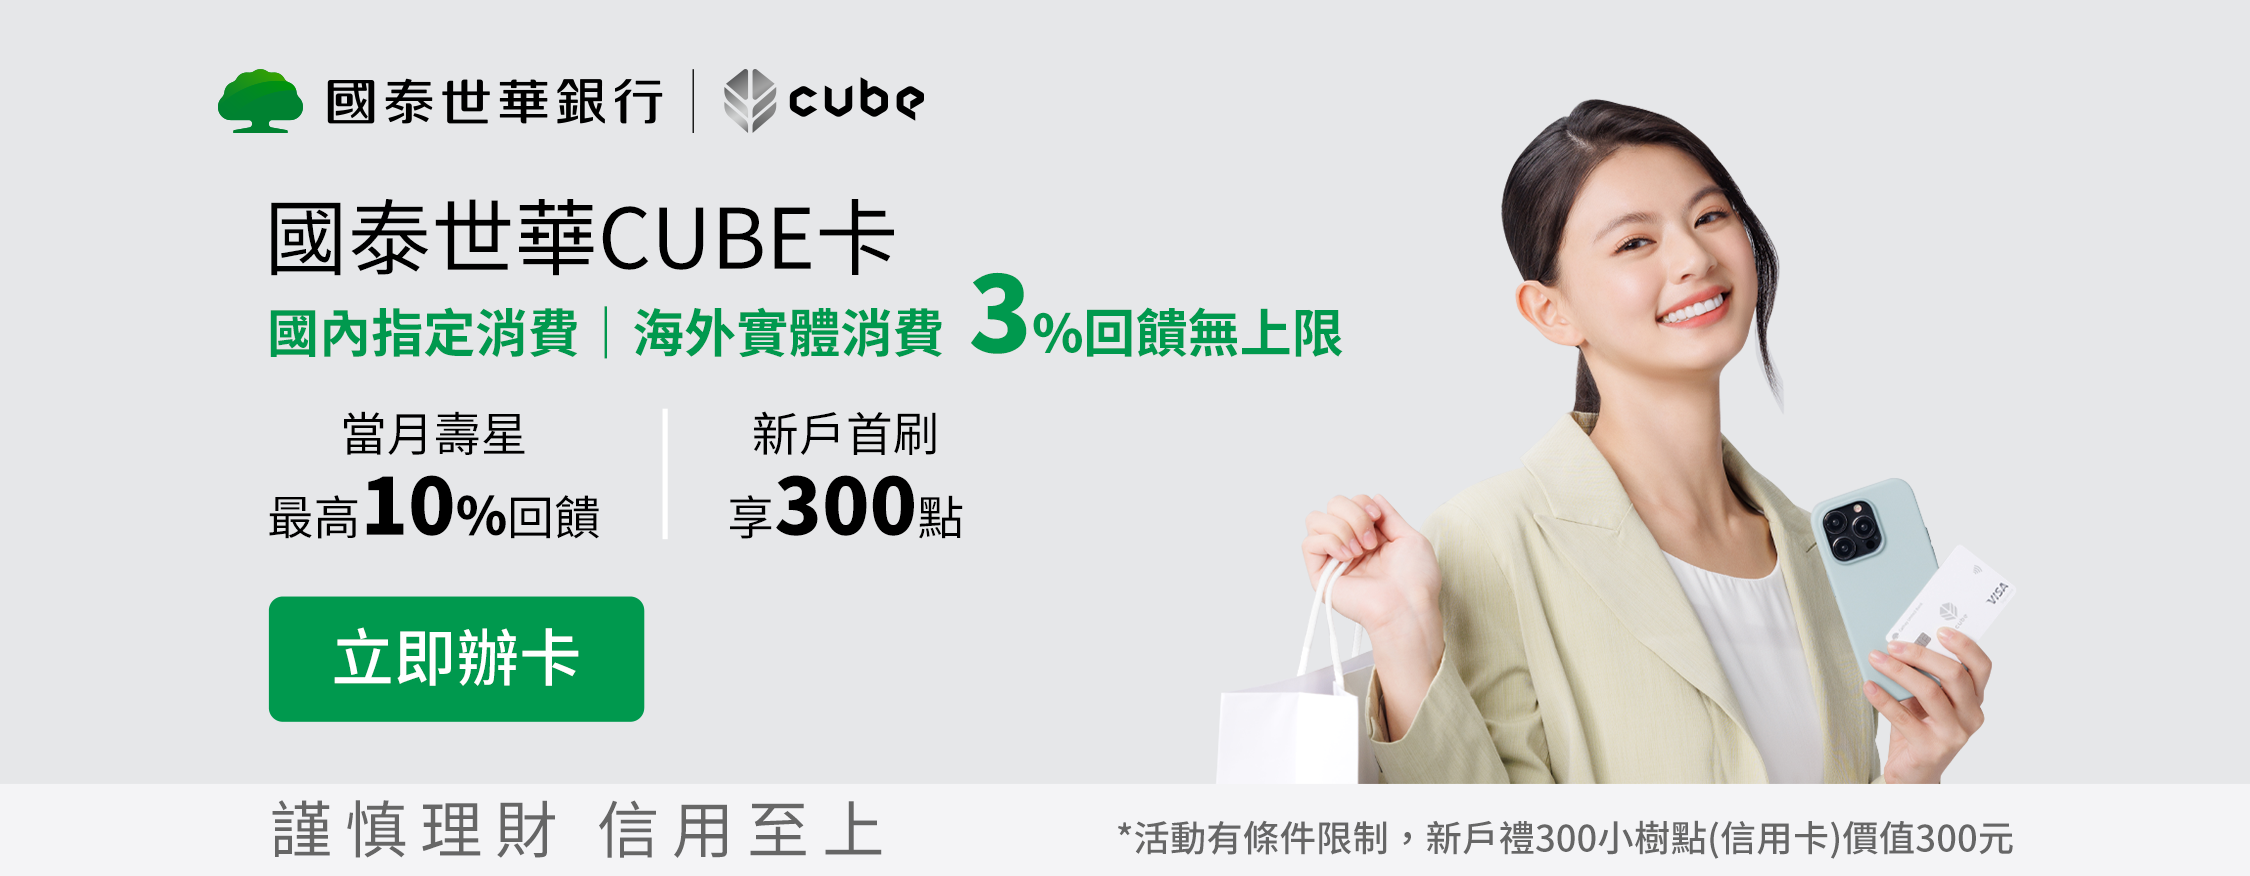 國泰cube 0331